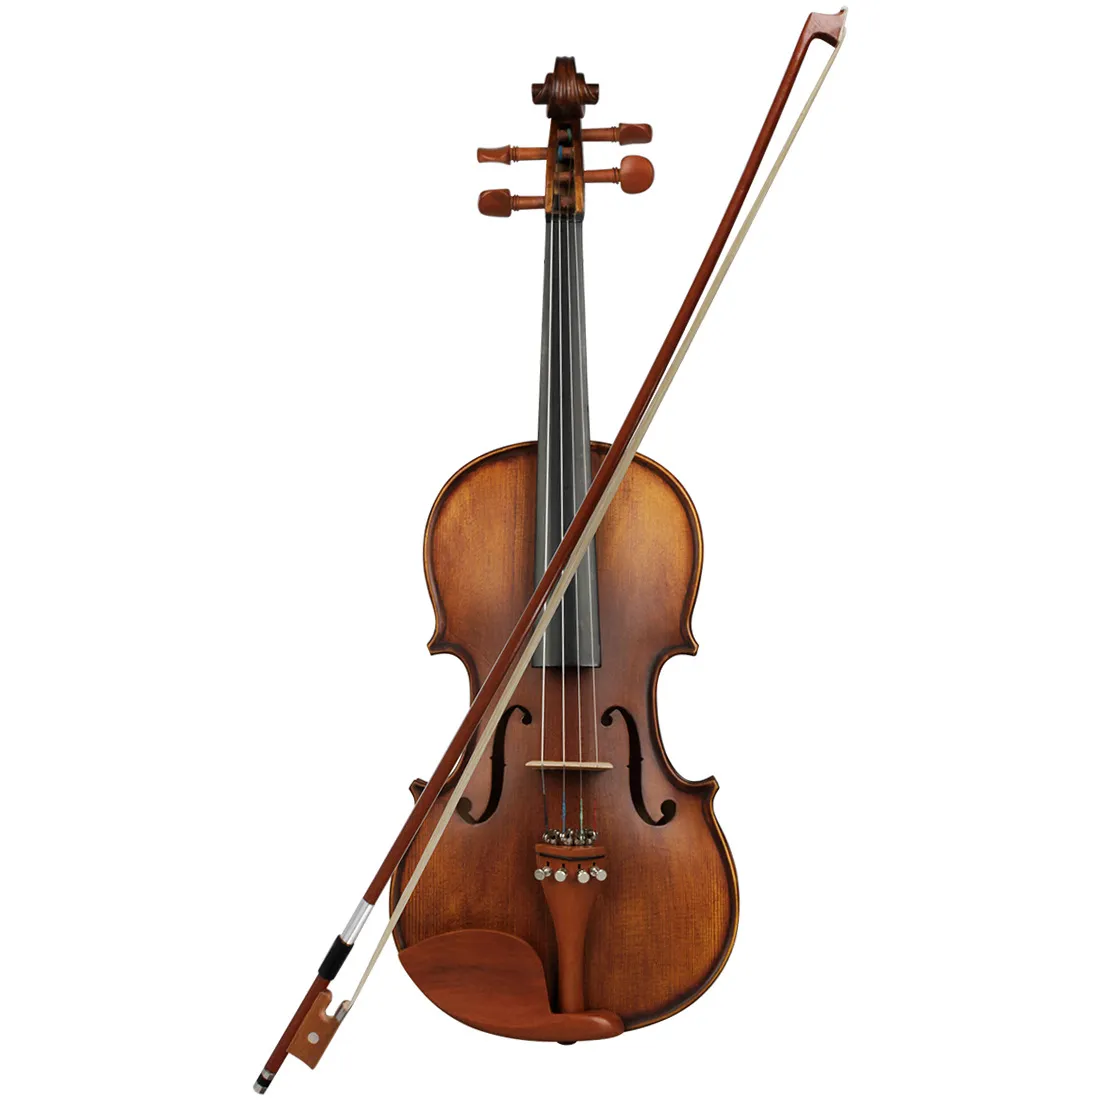 Violon haut de gamme pur violon antique fait main 4/4 gamme complète d'instruments de jeu de violon professionnel en bois de jujube 4/4